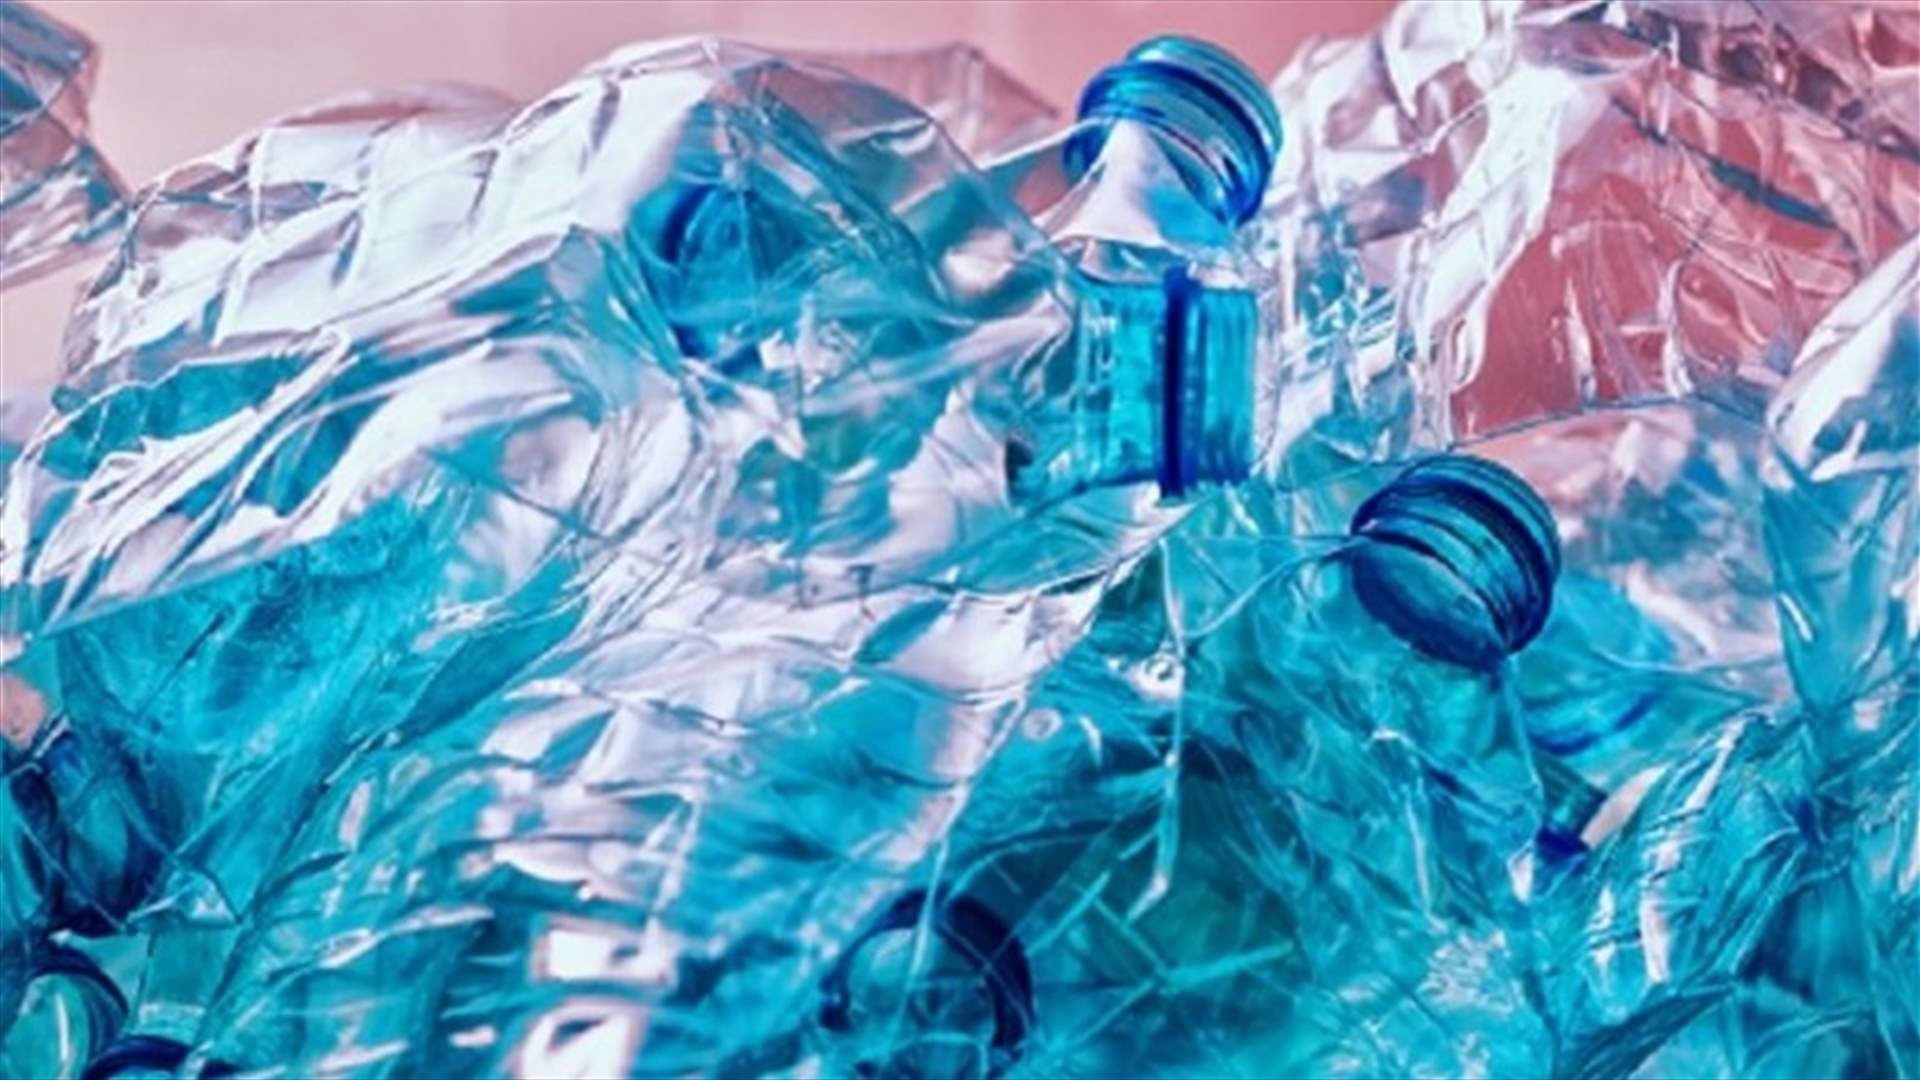 كمية هائلة من السموم... إليكم بعض المعلومات الصحية الصادمة عن أضرار البلاستيك!